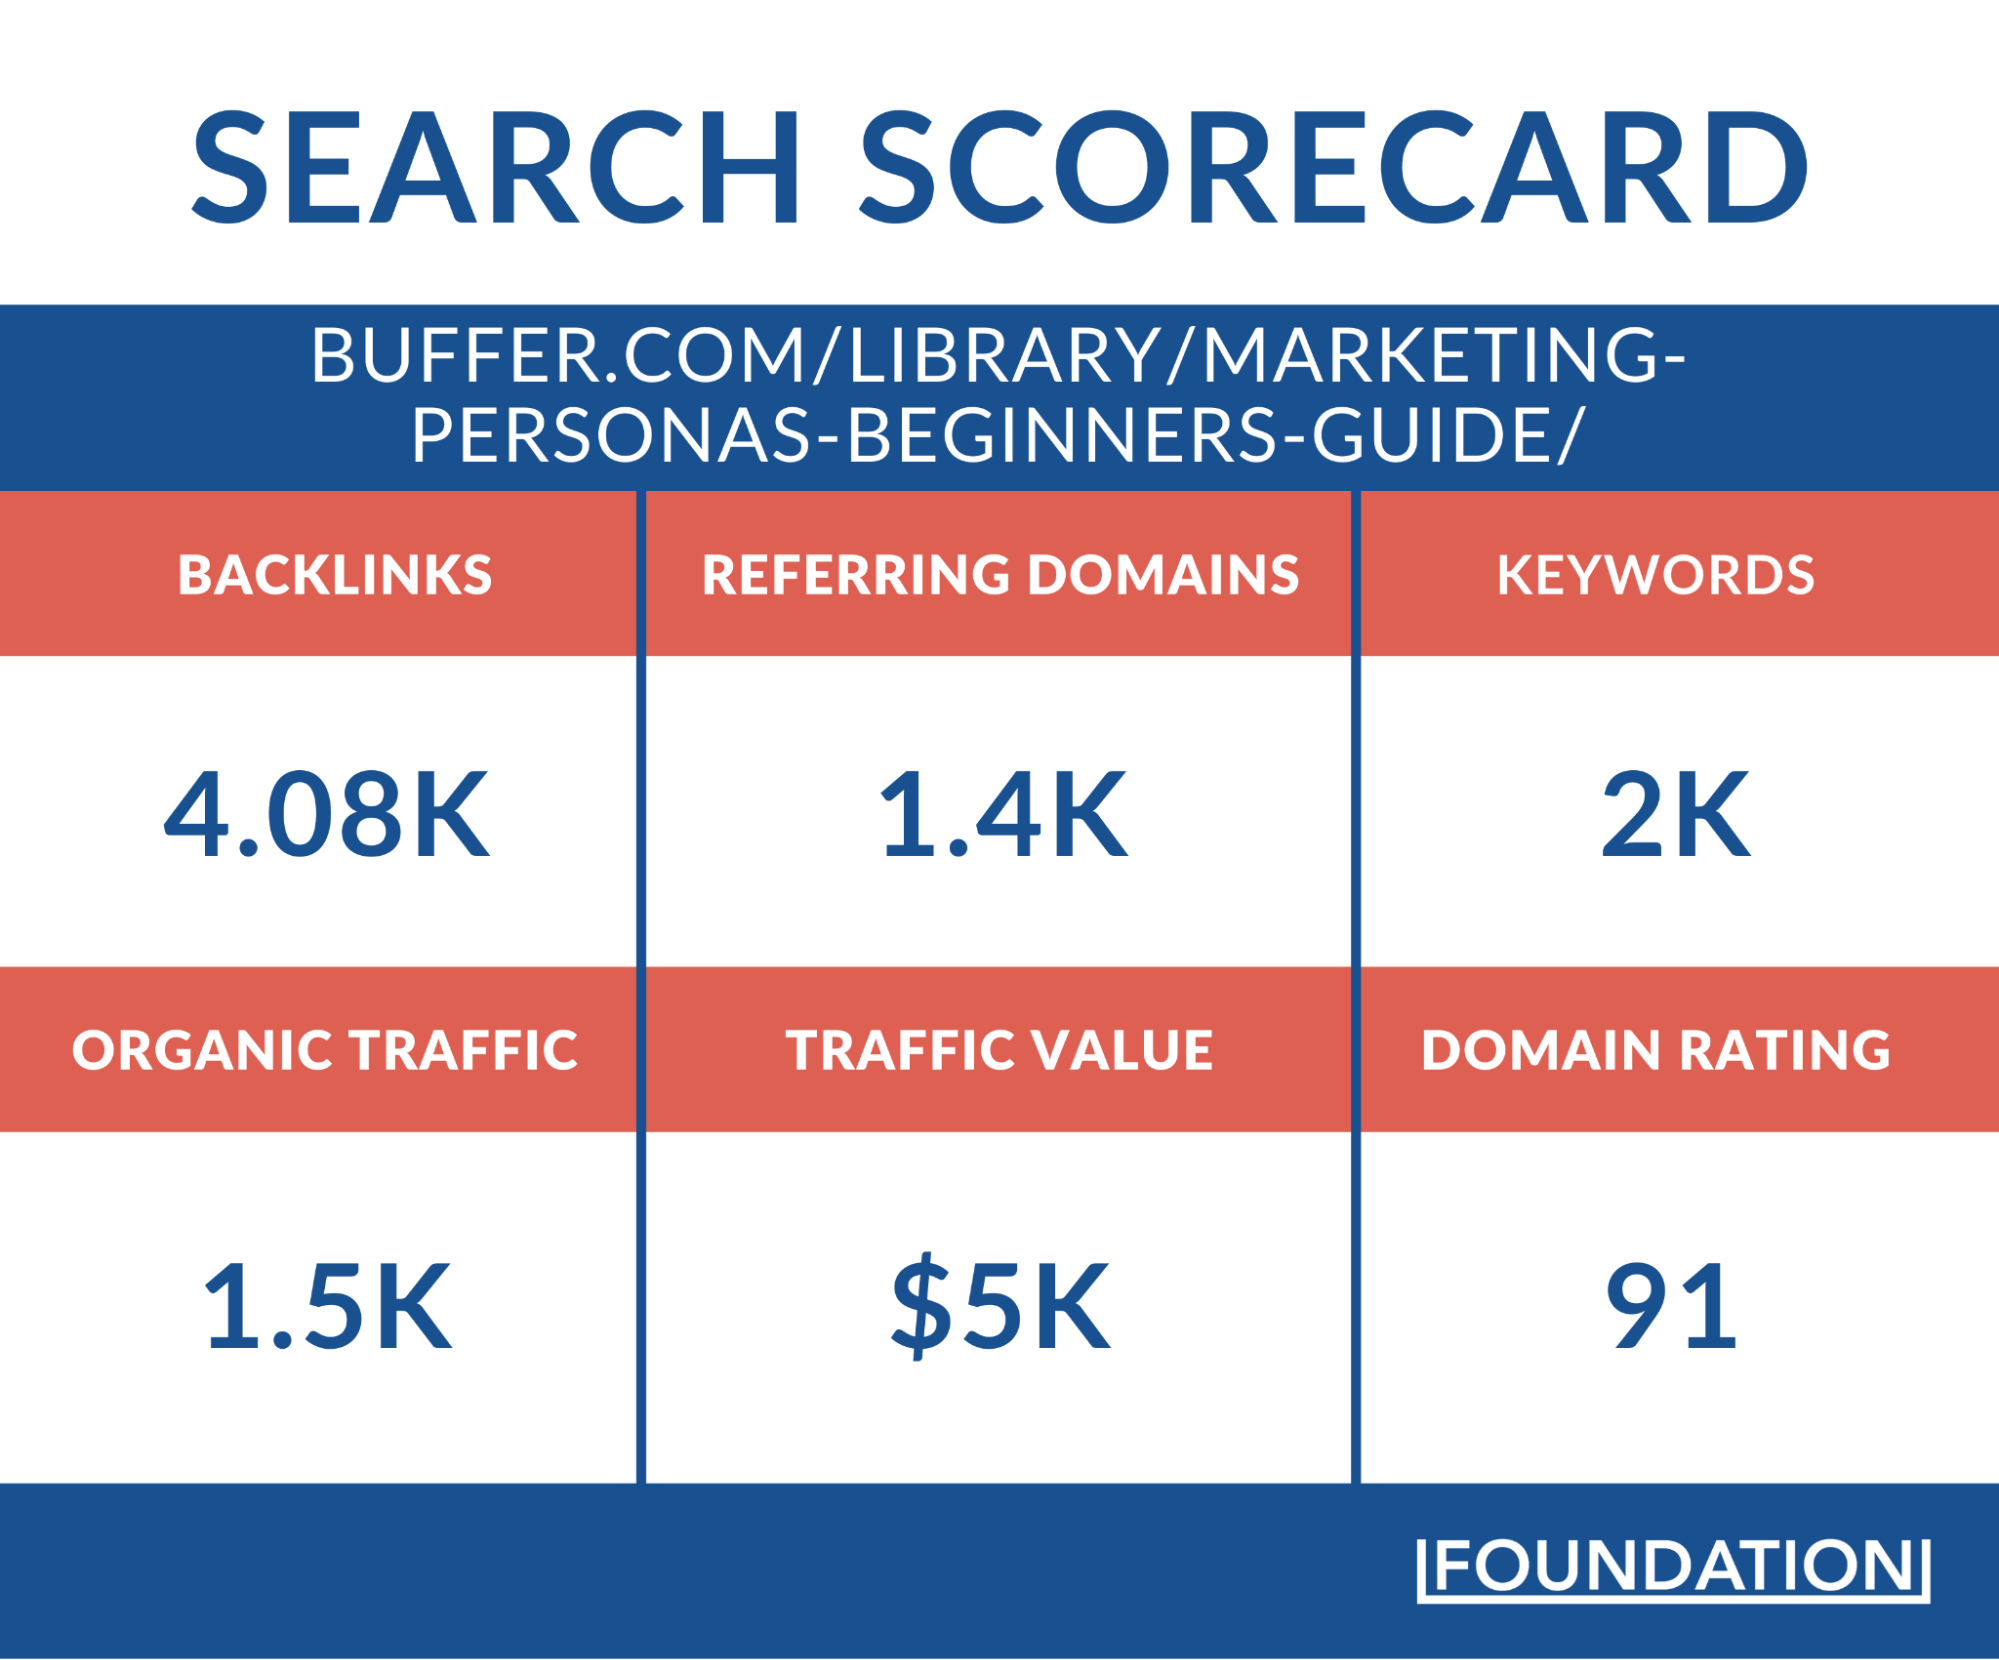 Buffer Marketing Persona Guide -Search Scorecard